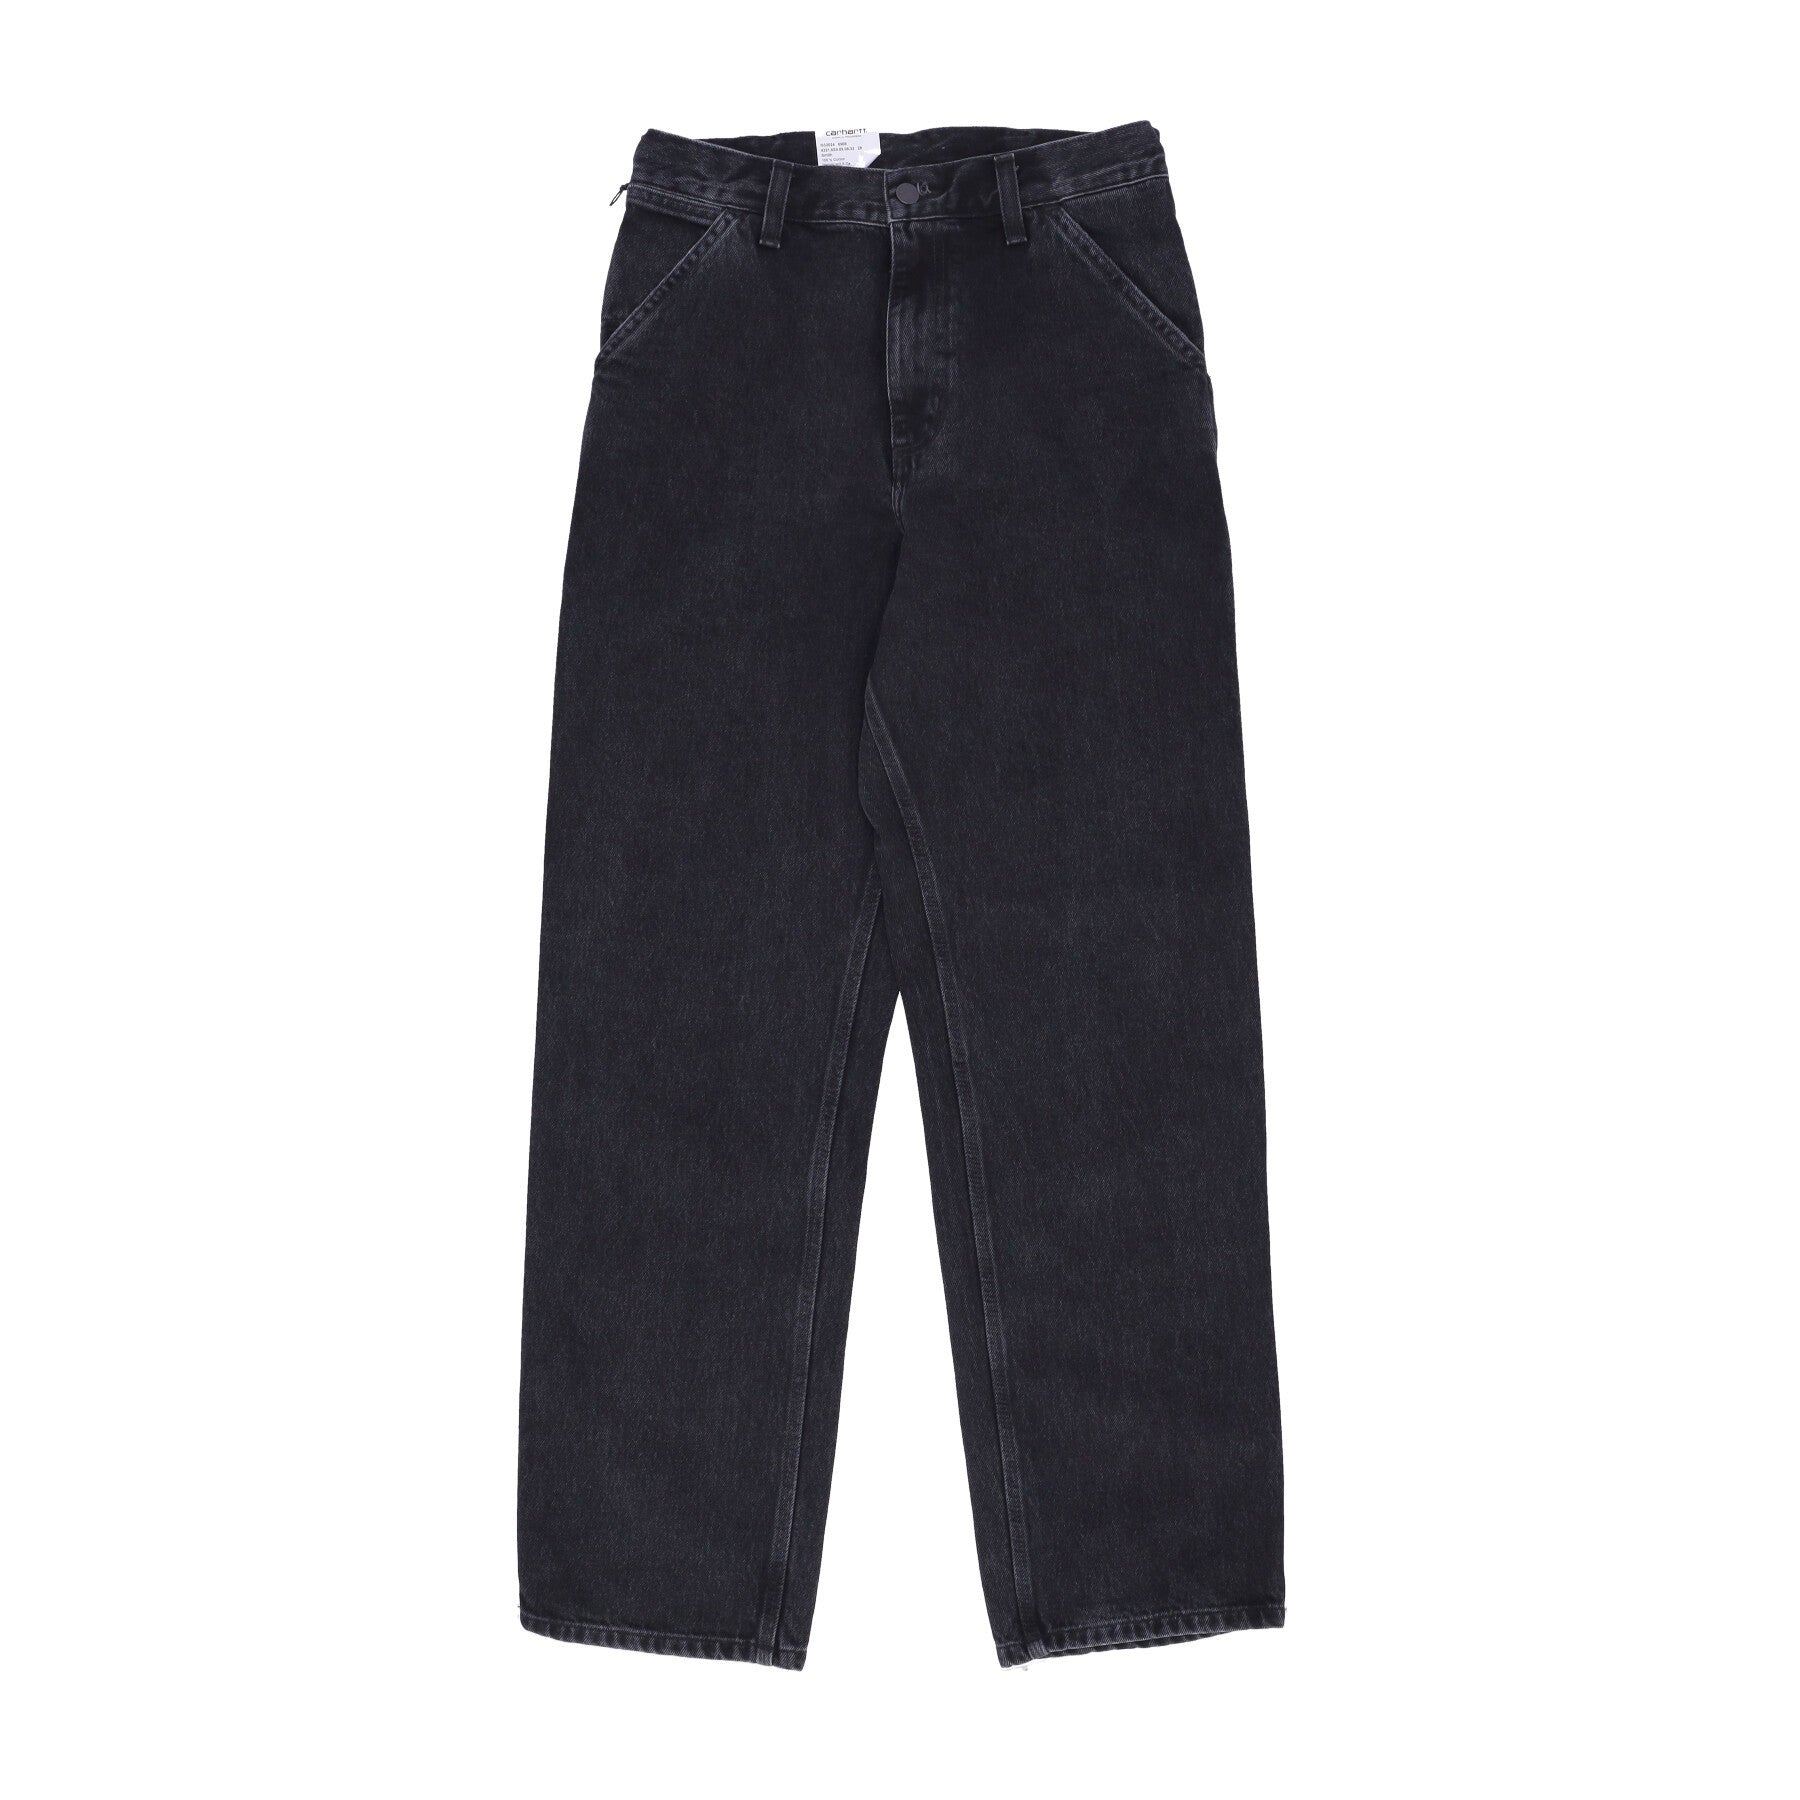 Jeans Uomo Single Knee Pant Black Stone Washed I032024